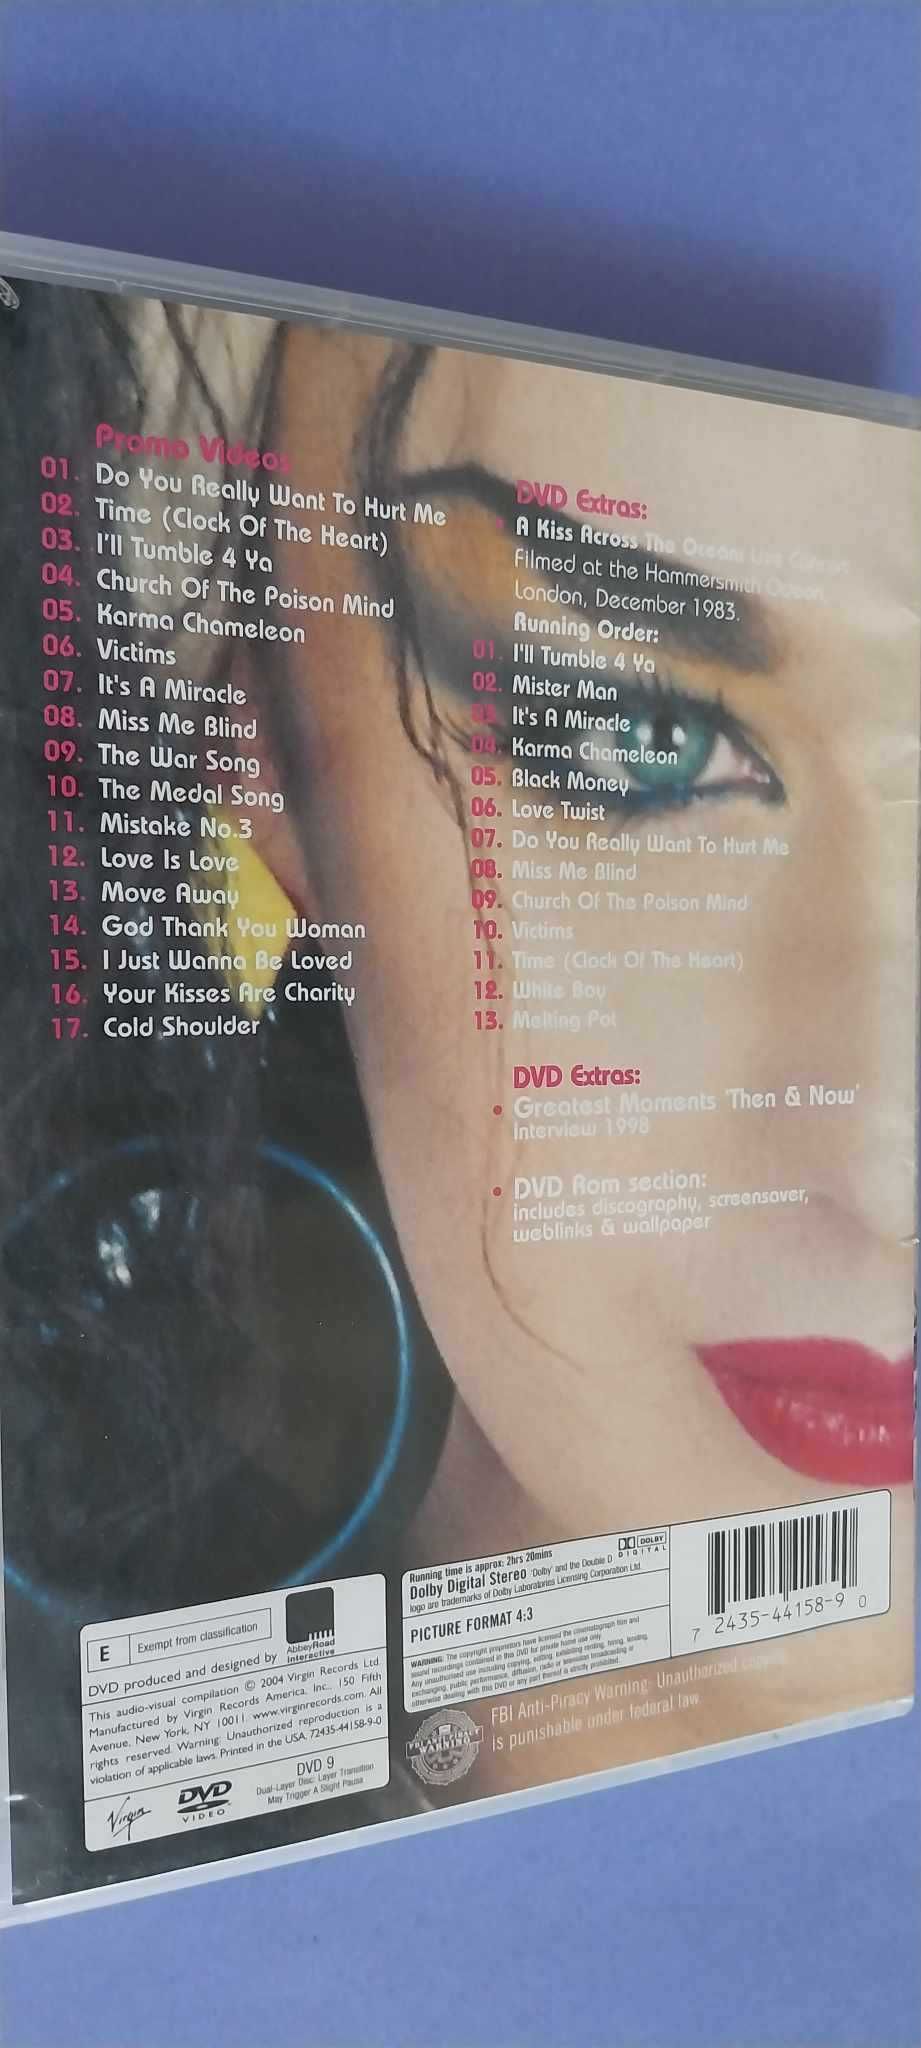 Culture Club / Boy George – Greatest Hits , DVD USA 2004 używane